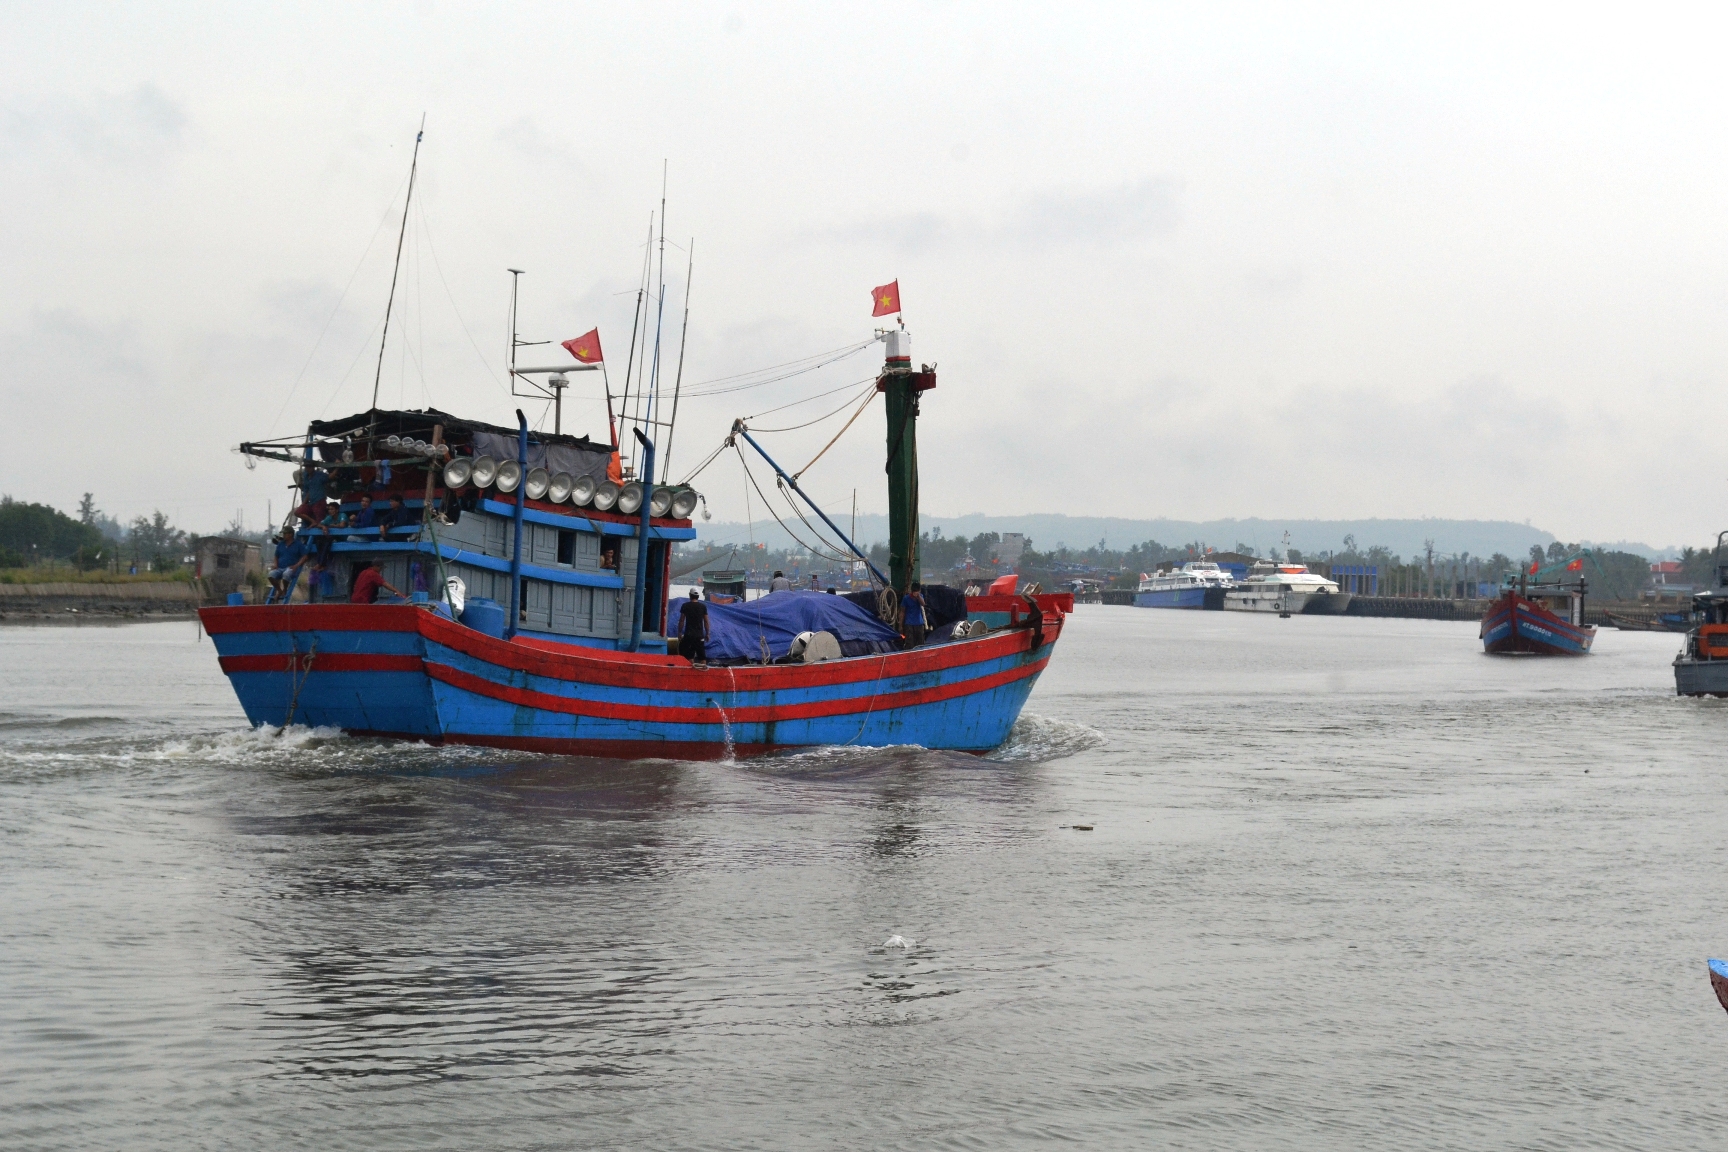 Nhiều tàu cá ở Quảng Ngãi hoạt động ngoài tỉnh không về địa phương nên khó khăn trong việc xử lý hành vi tàu cá vượt ranh giới, mất kết nối phát hiện qua hệ thống giám sát tàu cá. Ảnh: Ngọc Viên